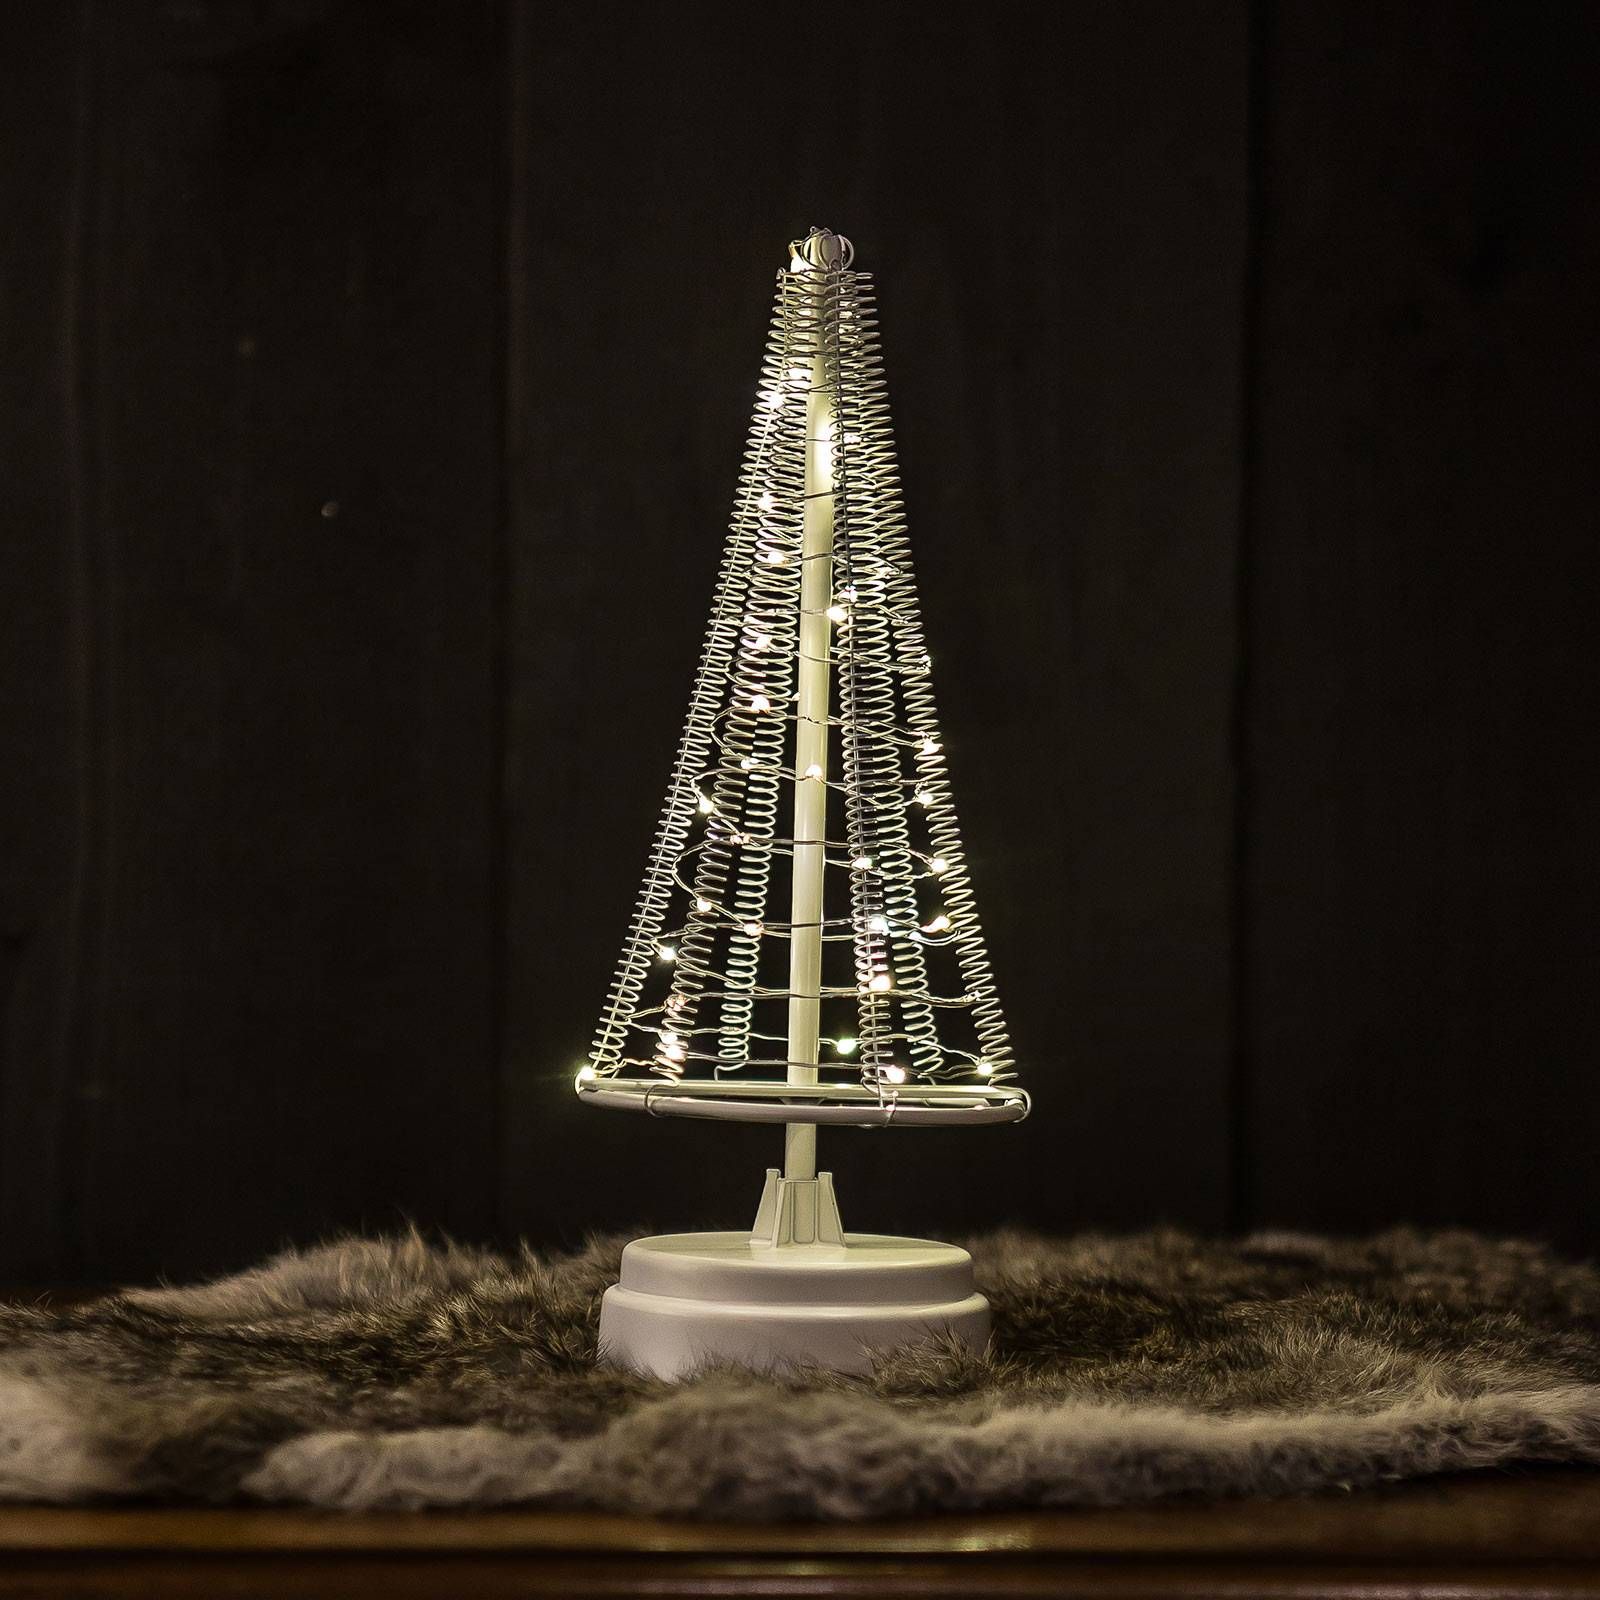 Hemsson Strom Santa's Tree, strieborný drôt výška 26 cm, ABS plast, oceľ potiahnutá práškom, meď, K: 26cm